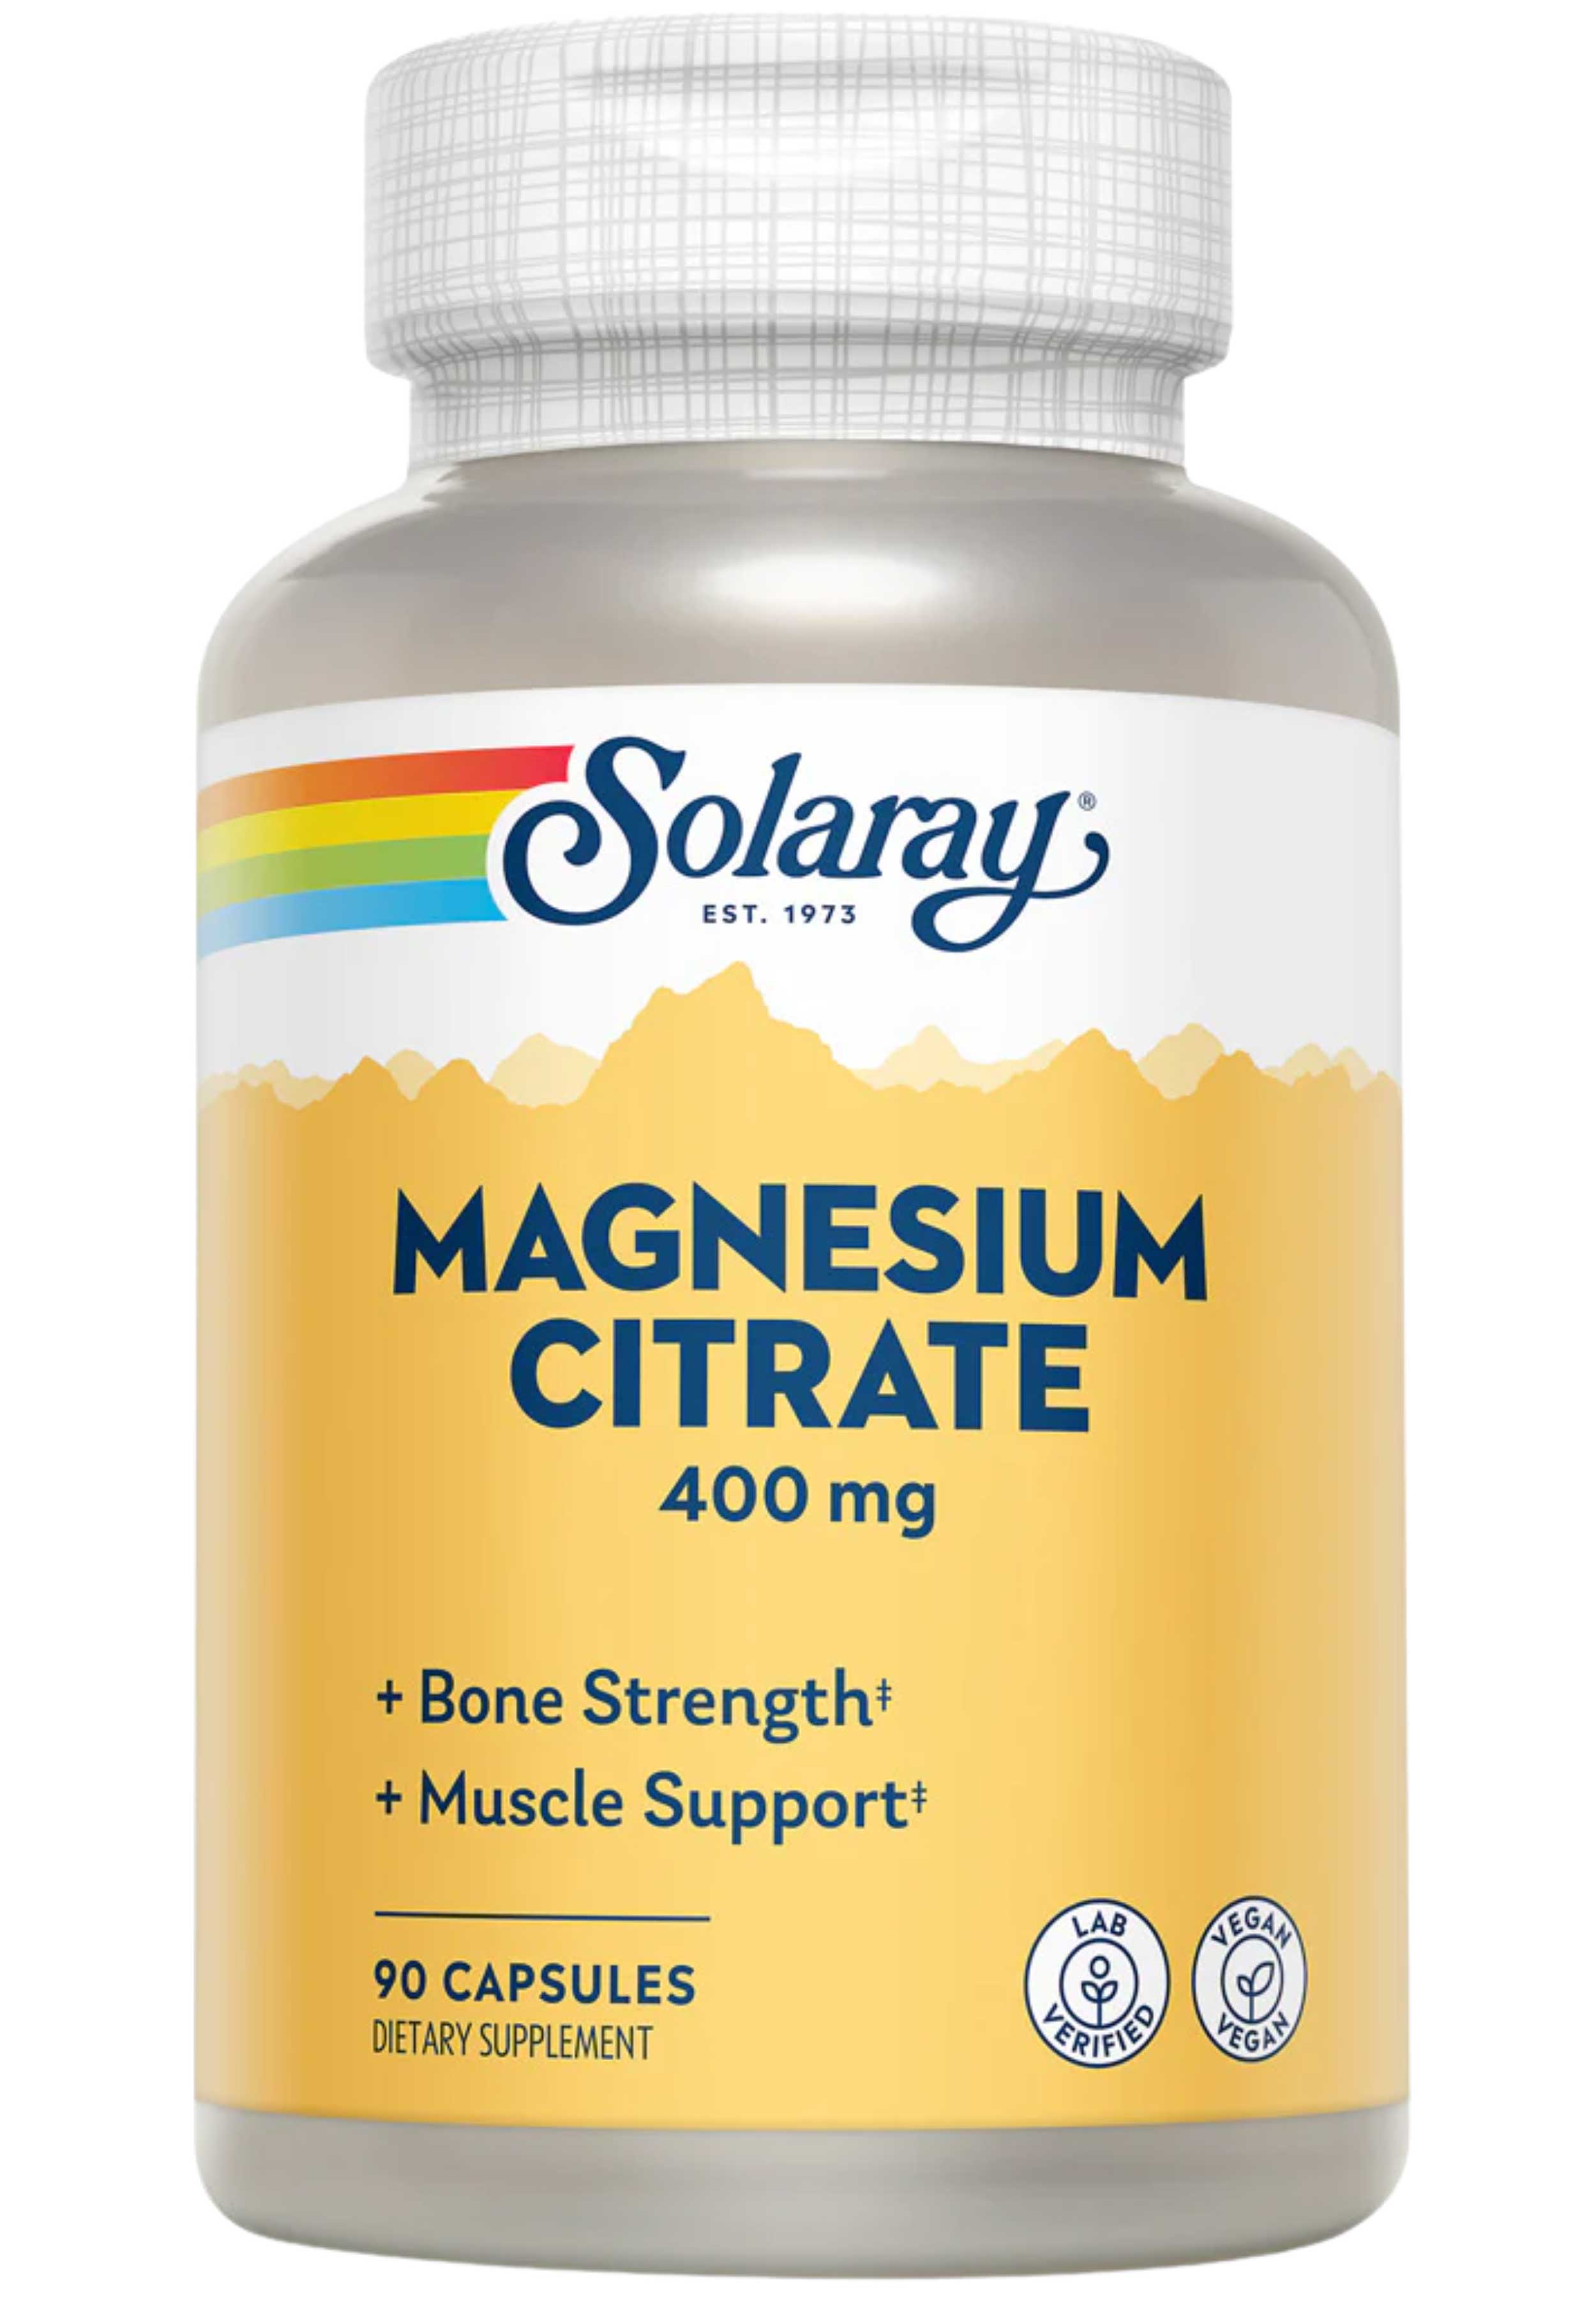 Solaray Magnesium Citrate 400